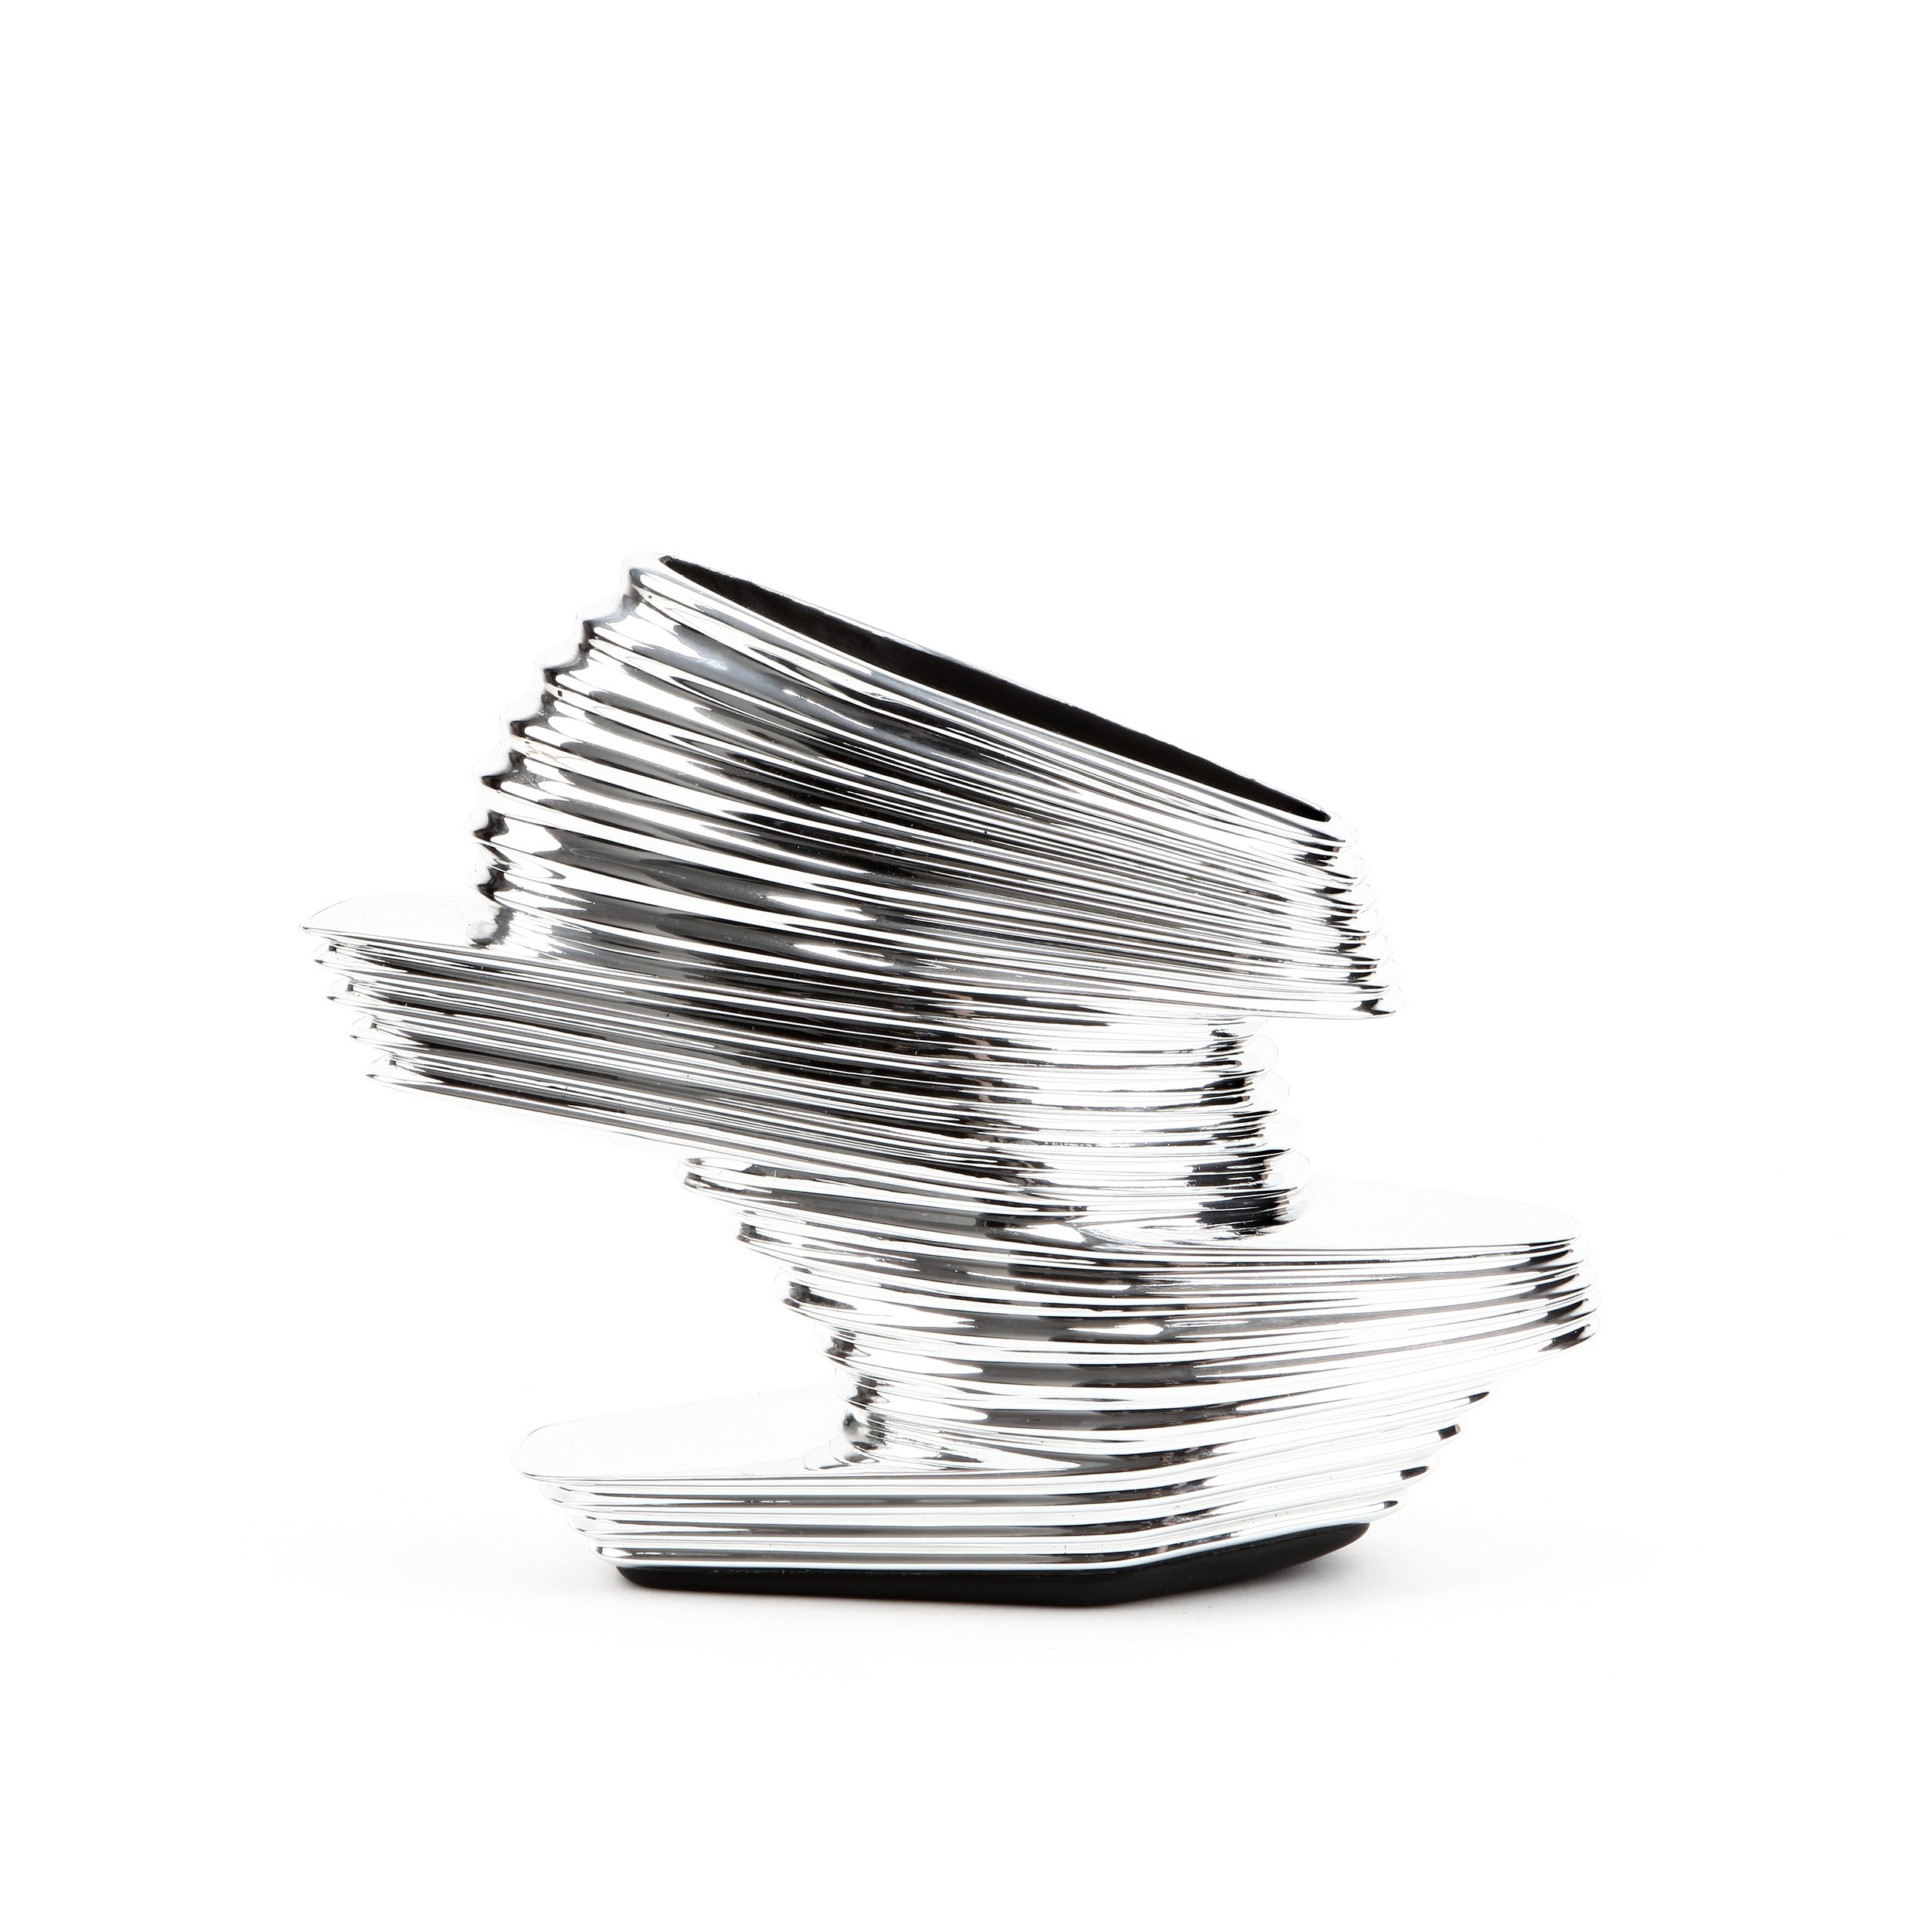 Nova Shoe, Zaha Hadid x United Nude, 2013